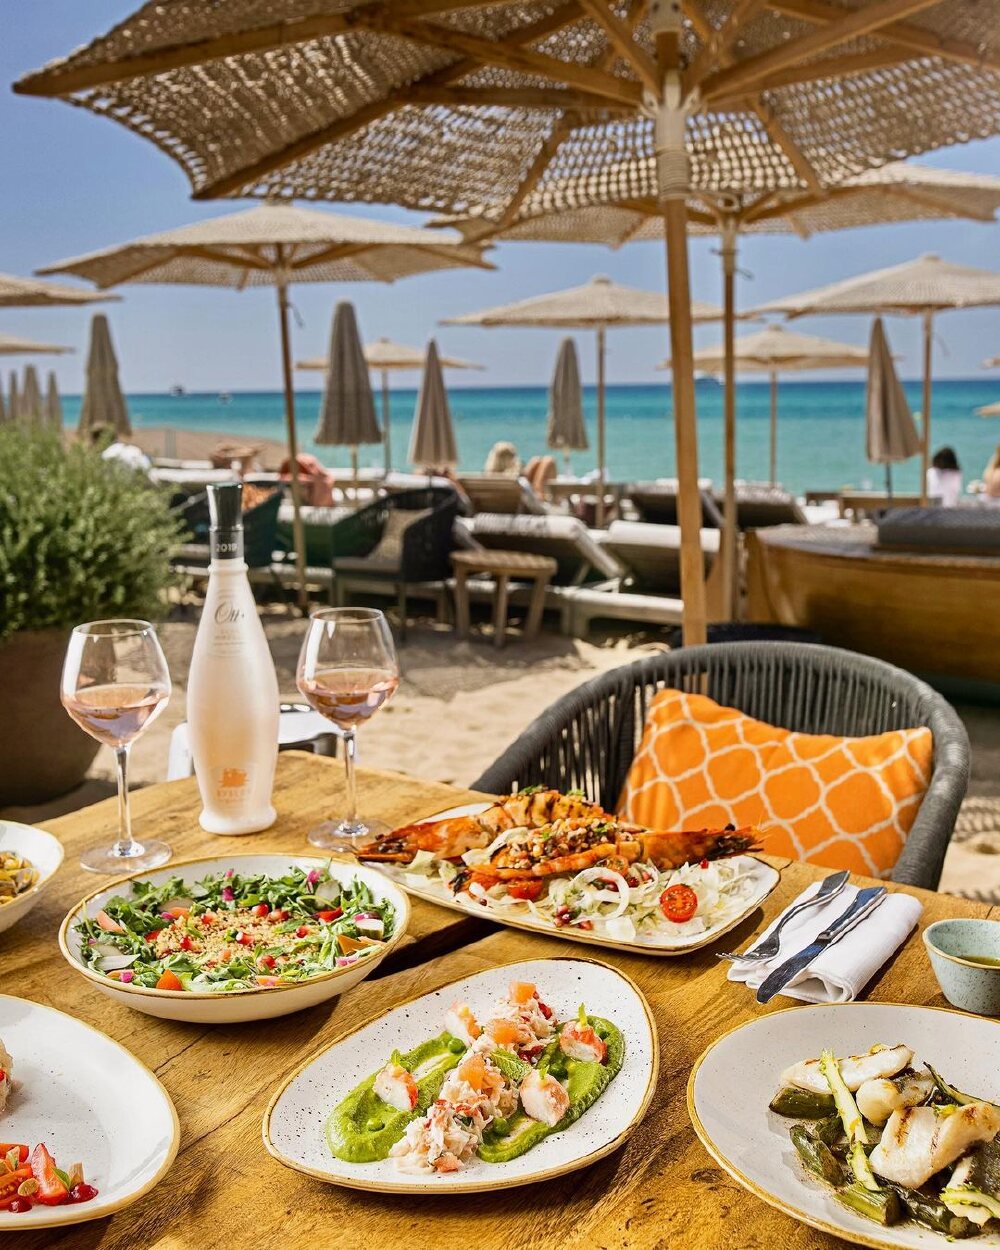 Best Beach Restaurants in Europe